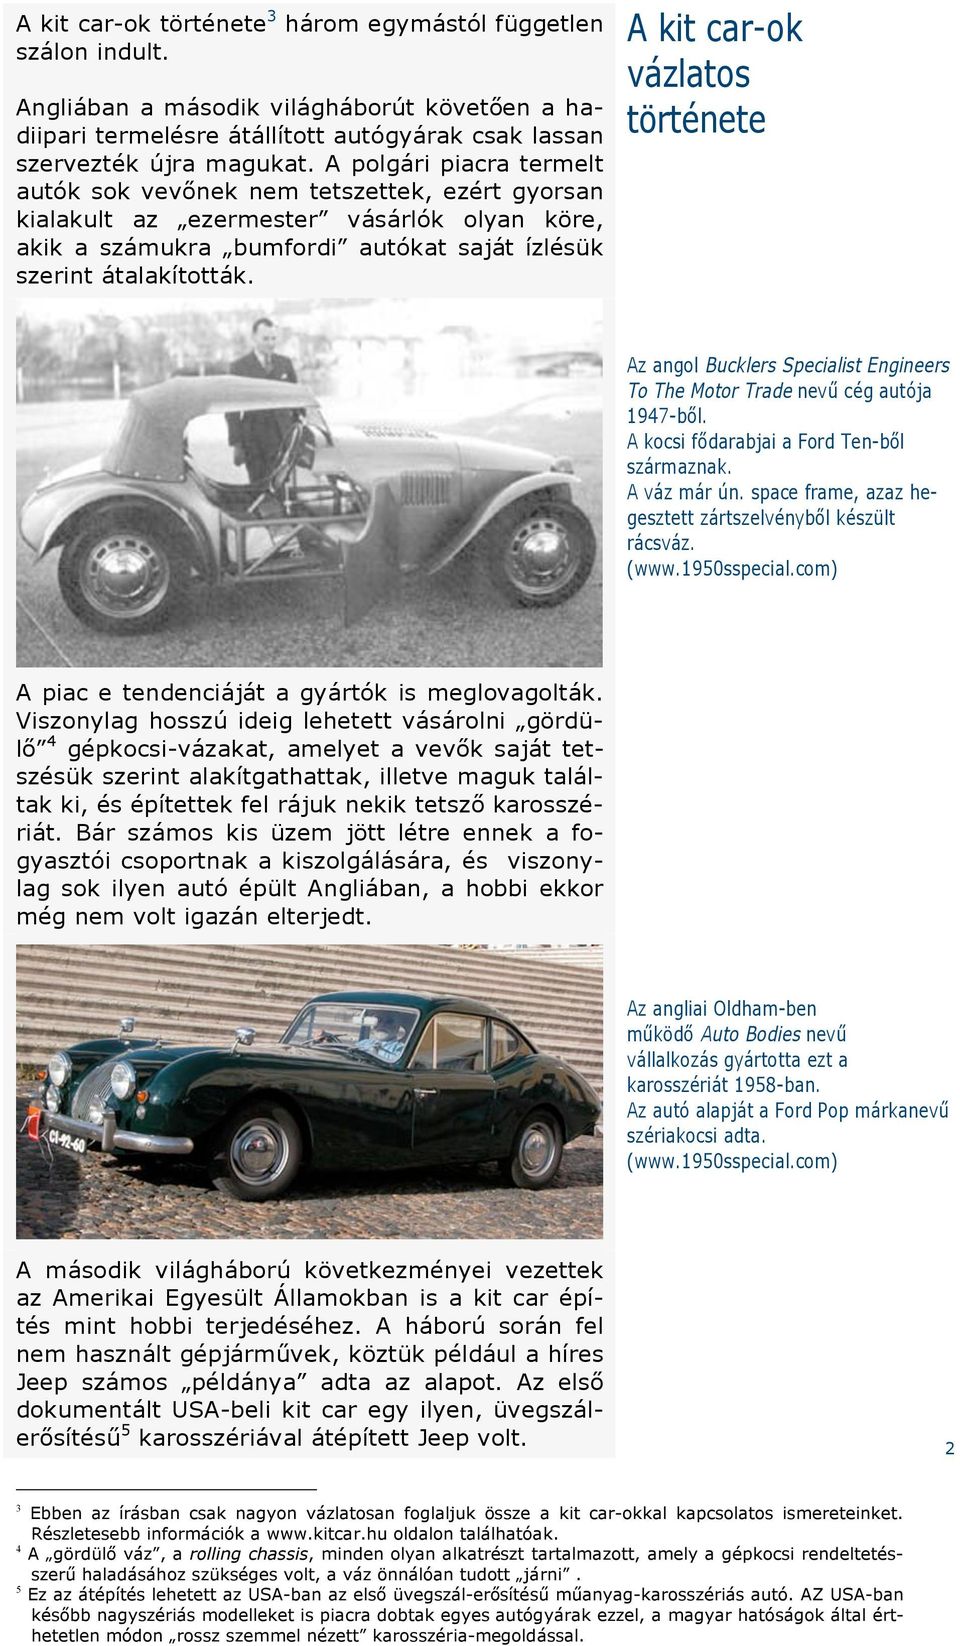 A kit car-ok vázlatos története Az angol Bucklers Specialist Engineers To The Motor Trade nev" cég autója 1947-b!l. A kocsi f!darabjai a Ford Ten-b!l származnak. A váz már ún.